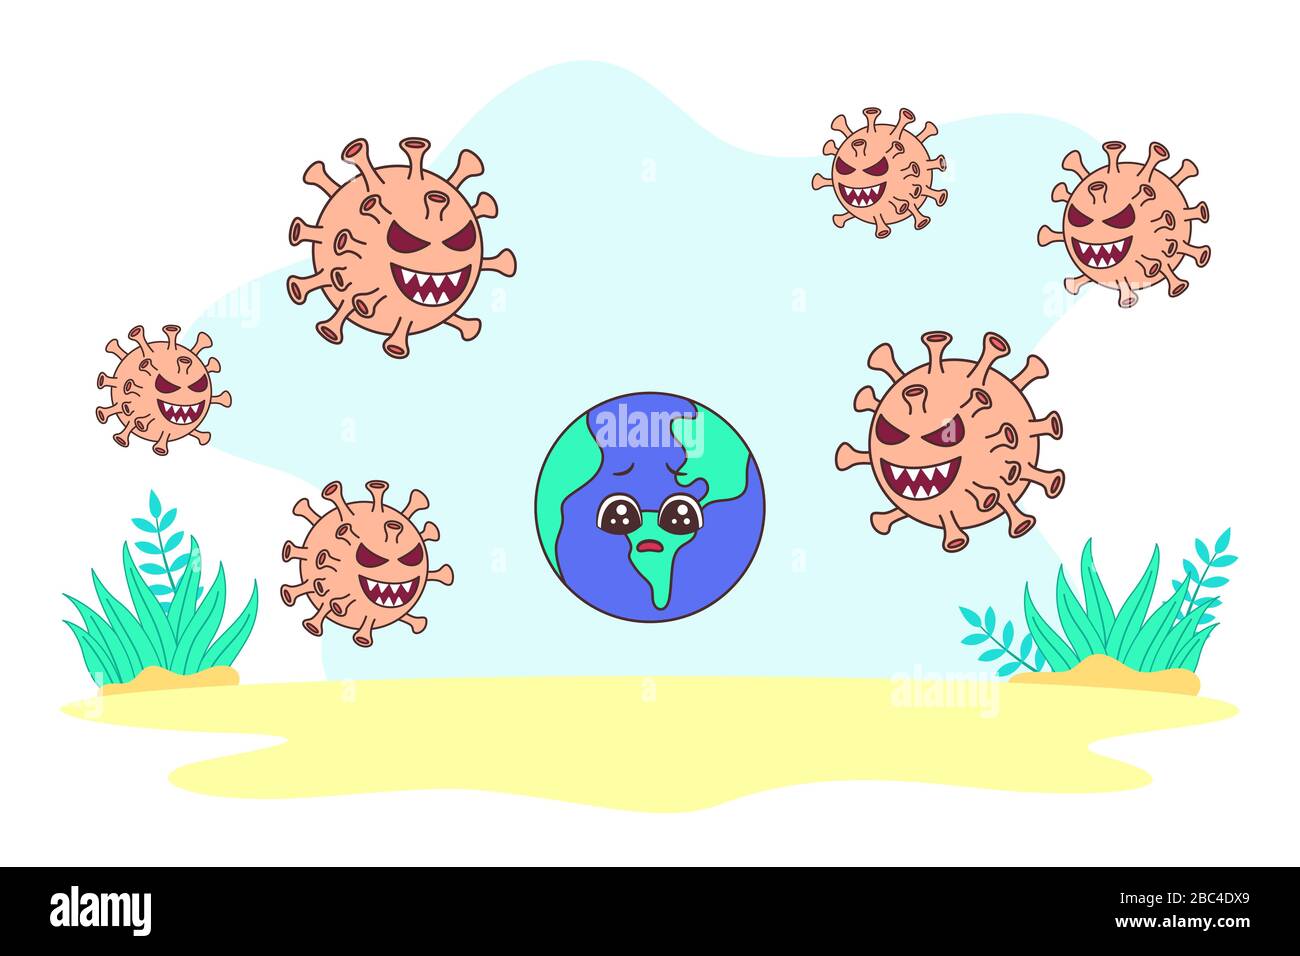 Illustrazione vettoriale la Terra è circondata da coronavirus. Il virus Corona sta inseguendo la terra come metafora del virus corona epidemico nel mondo. Illustrazione Vettoriale